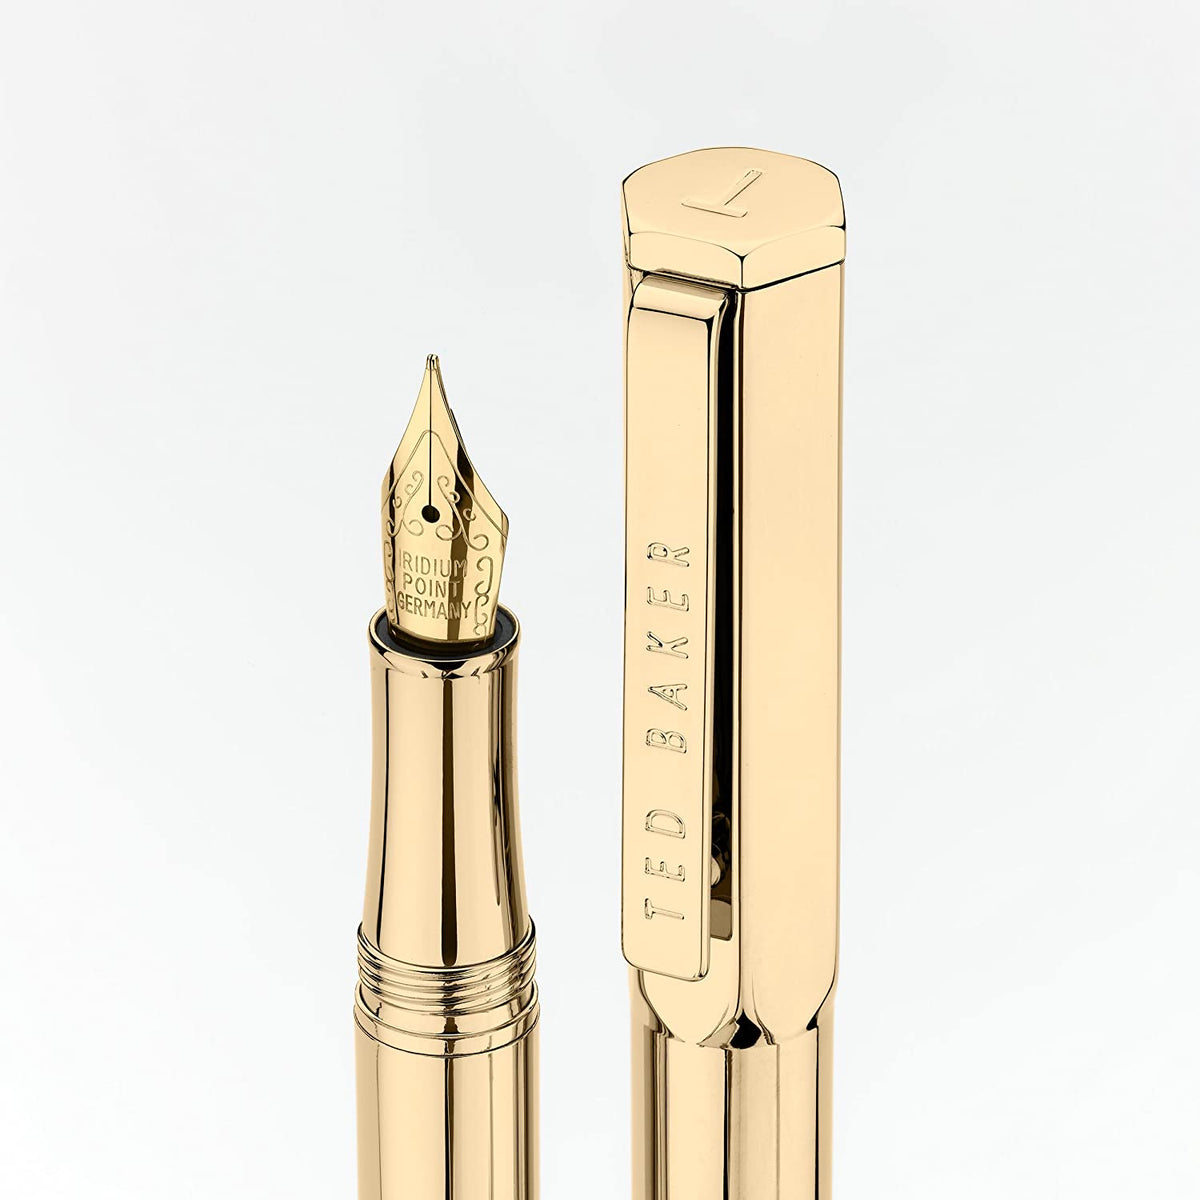 Ted Baker 24k Fountain Pen, Gold